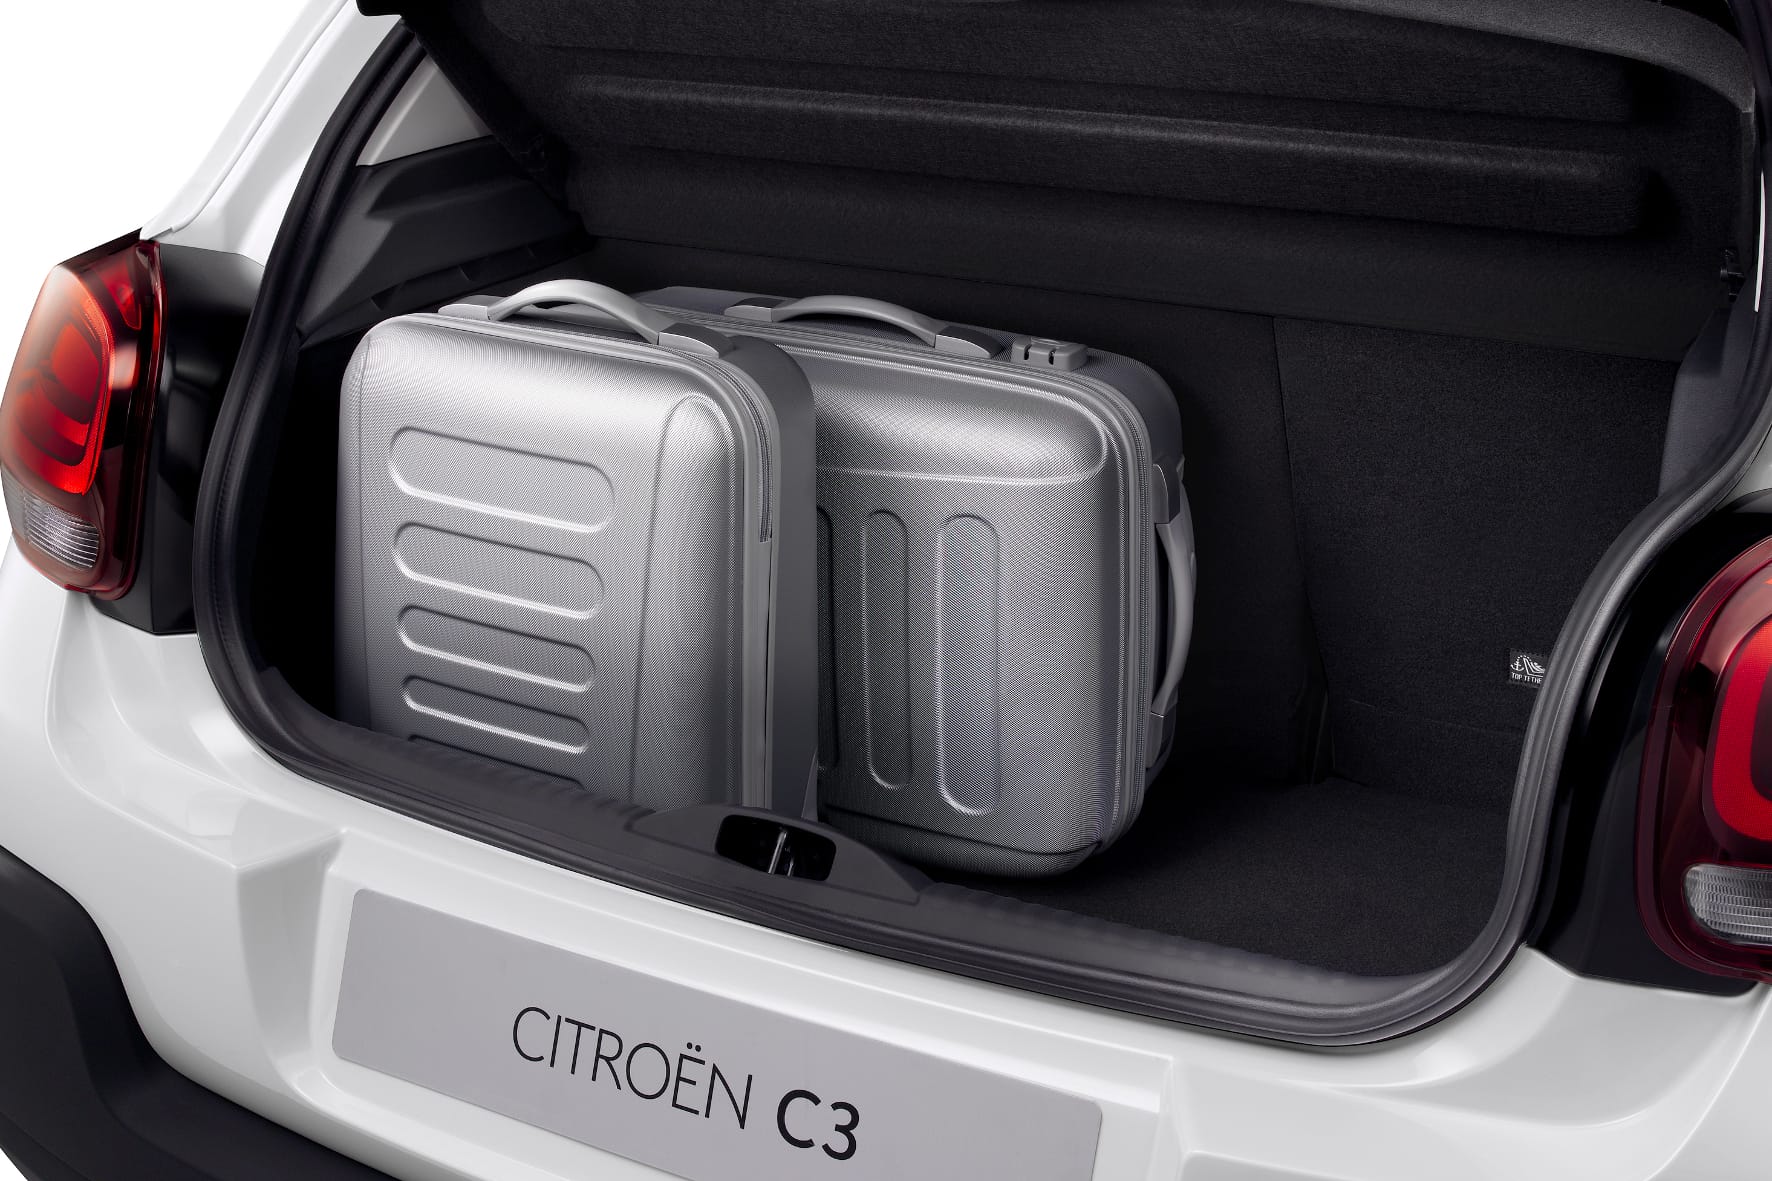 Das Kofferraumvolumen des C3 beträgt 300 Liter und taugt damit sogar für den Familienausflug.